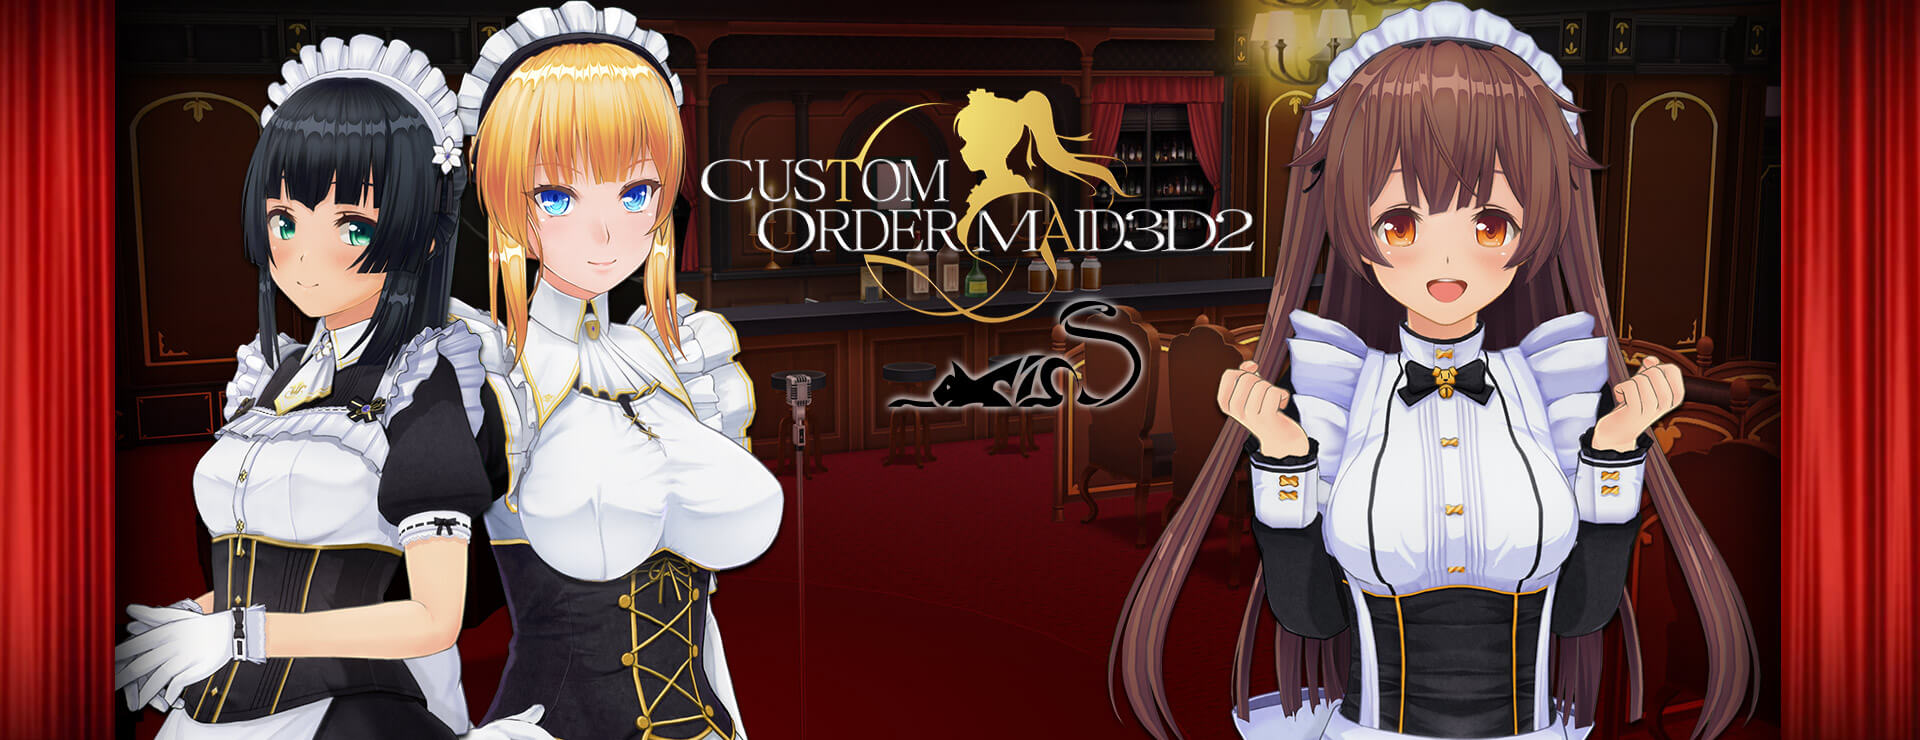 Custom Order Maid 3D2 Game - Simulación Juego. 